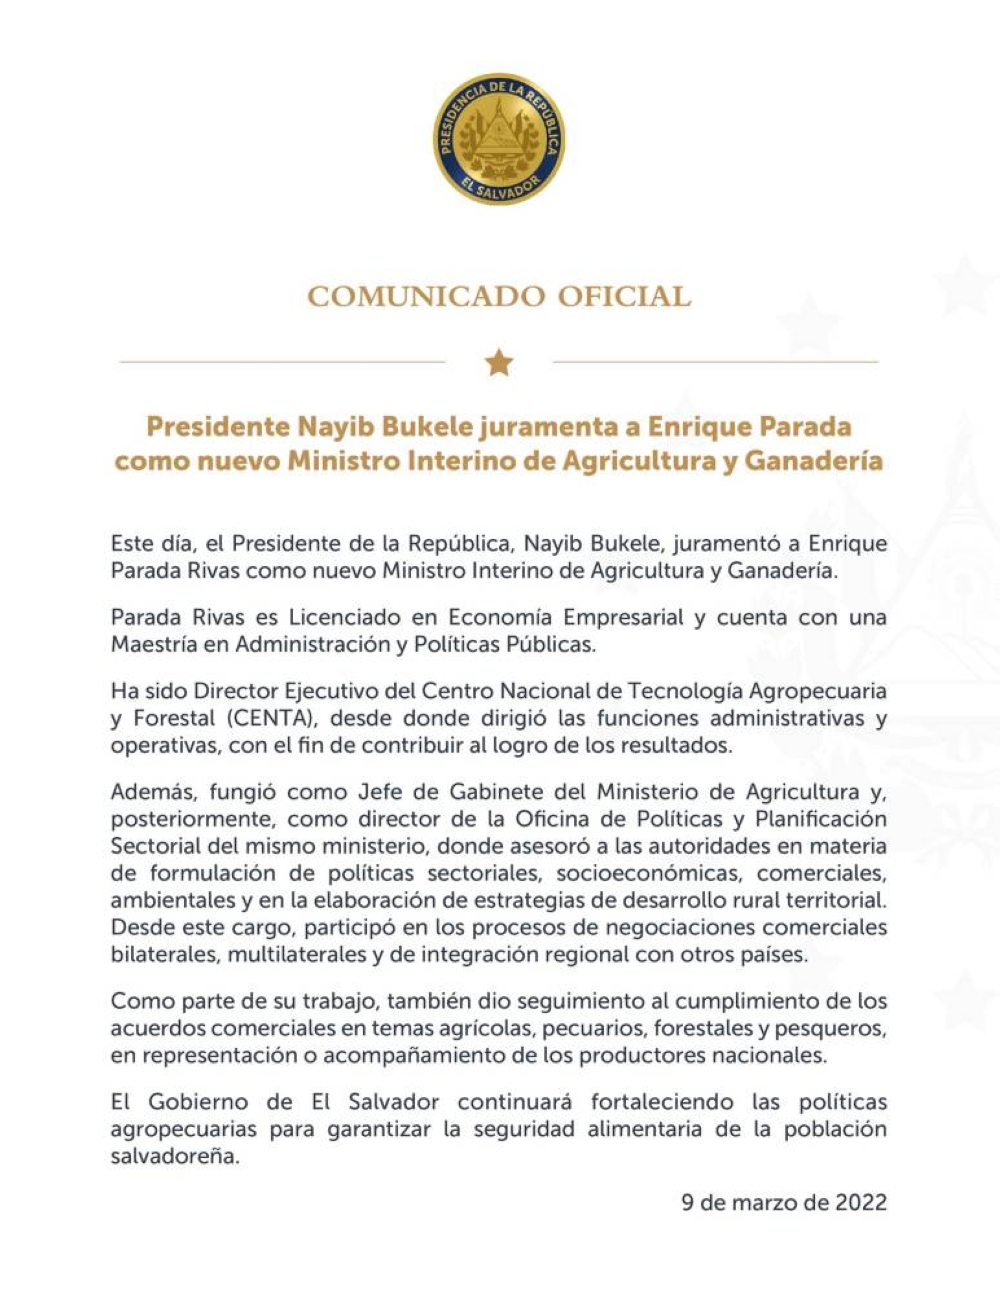 Hoja profesional de Enrique Parada Rivas, nuevo ministro interino del MAG